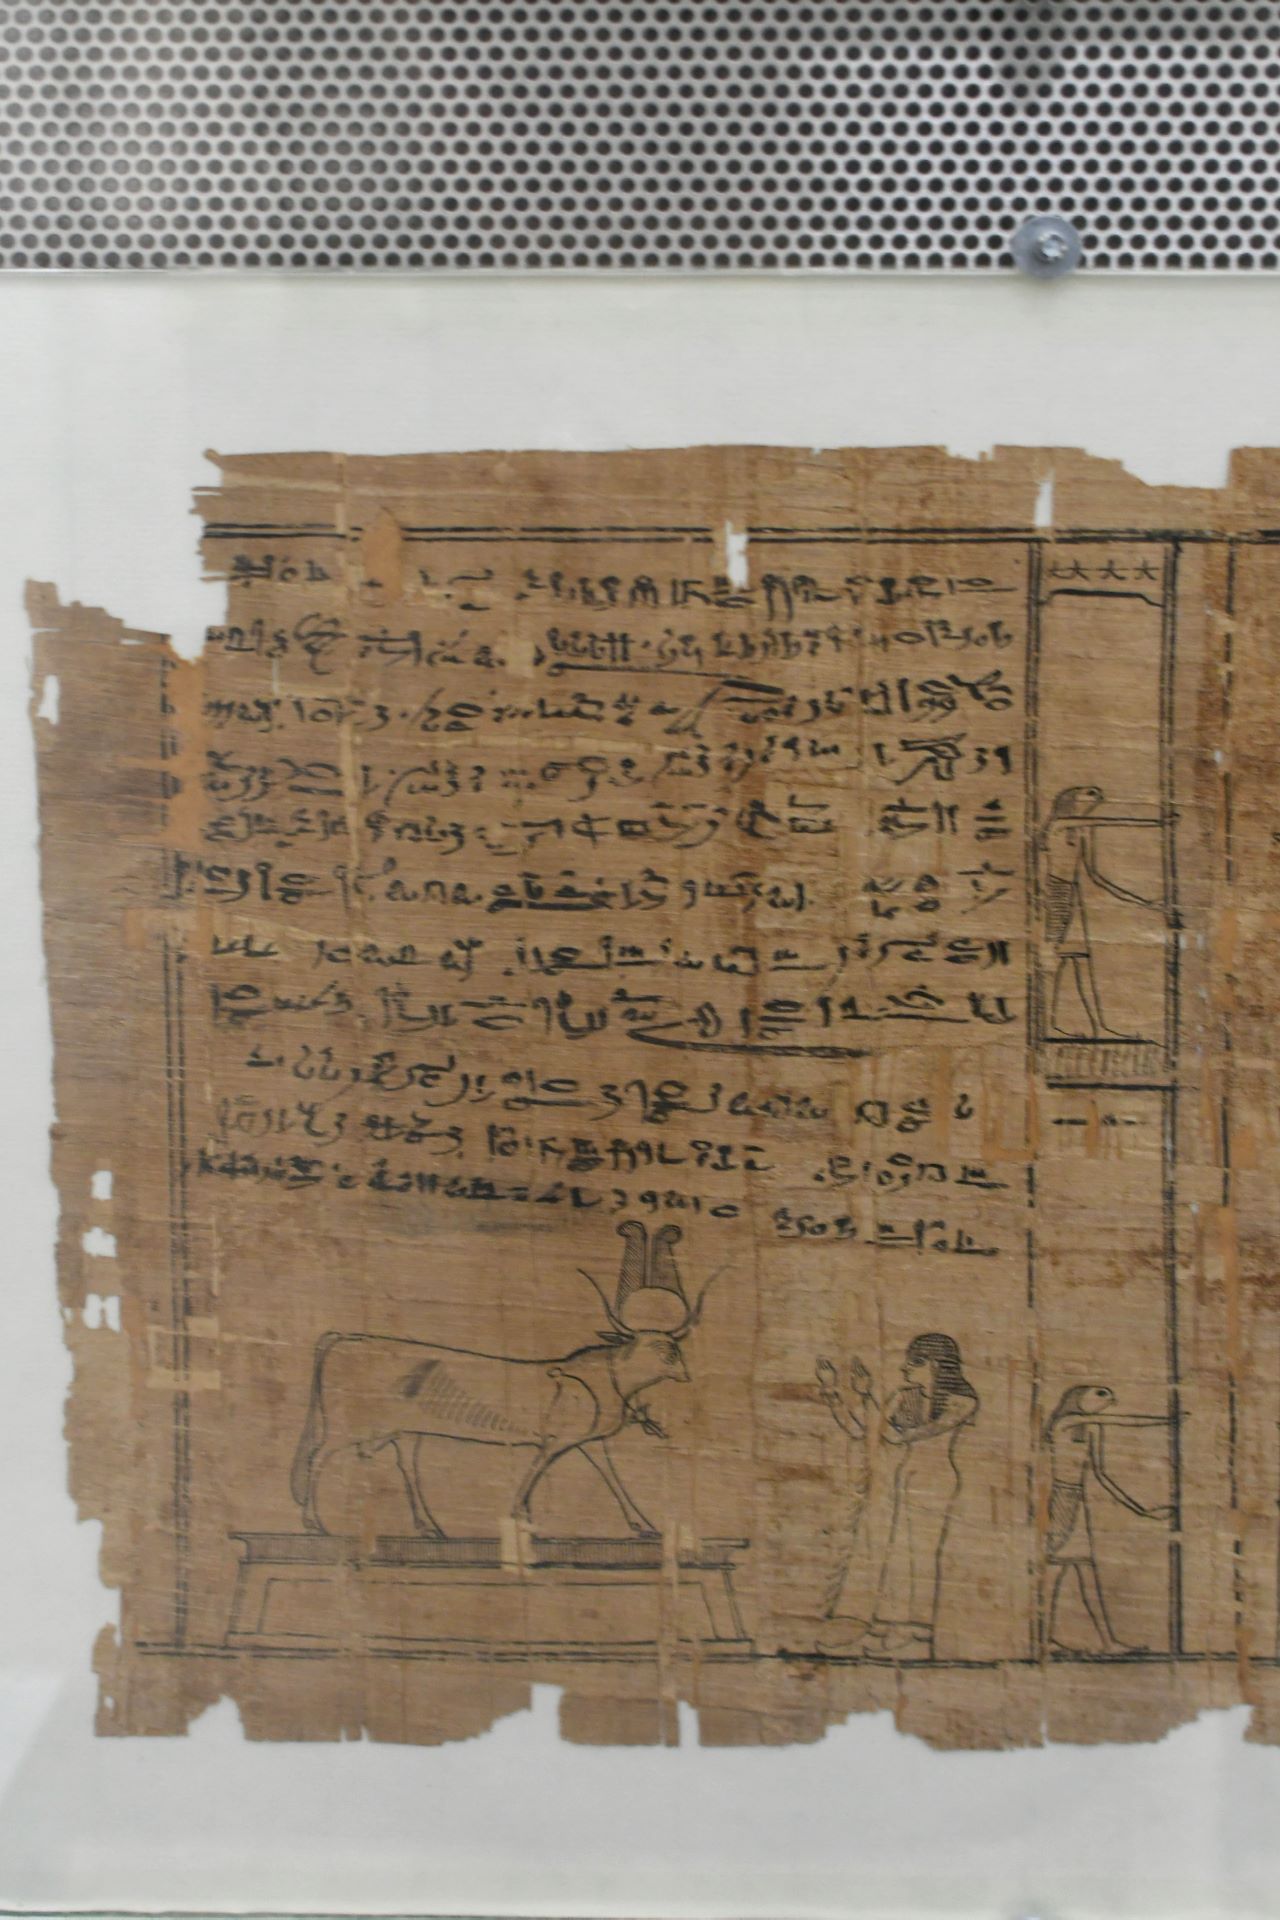 blog:2018-11-17-texte-aus-ferner-zeit:2018-11-17-wien-papyrusmuseum-068b.jpg